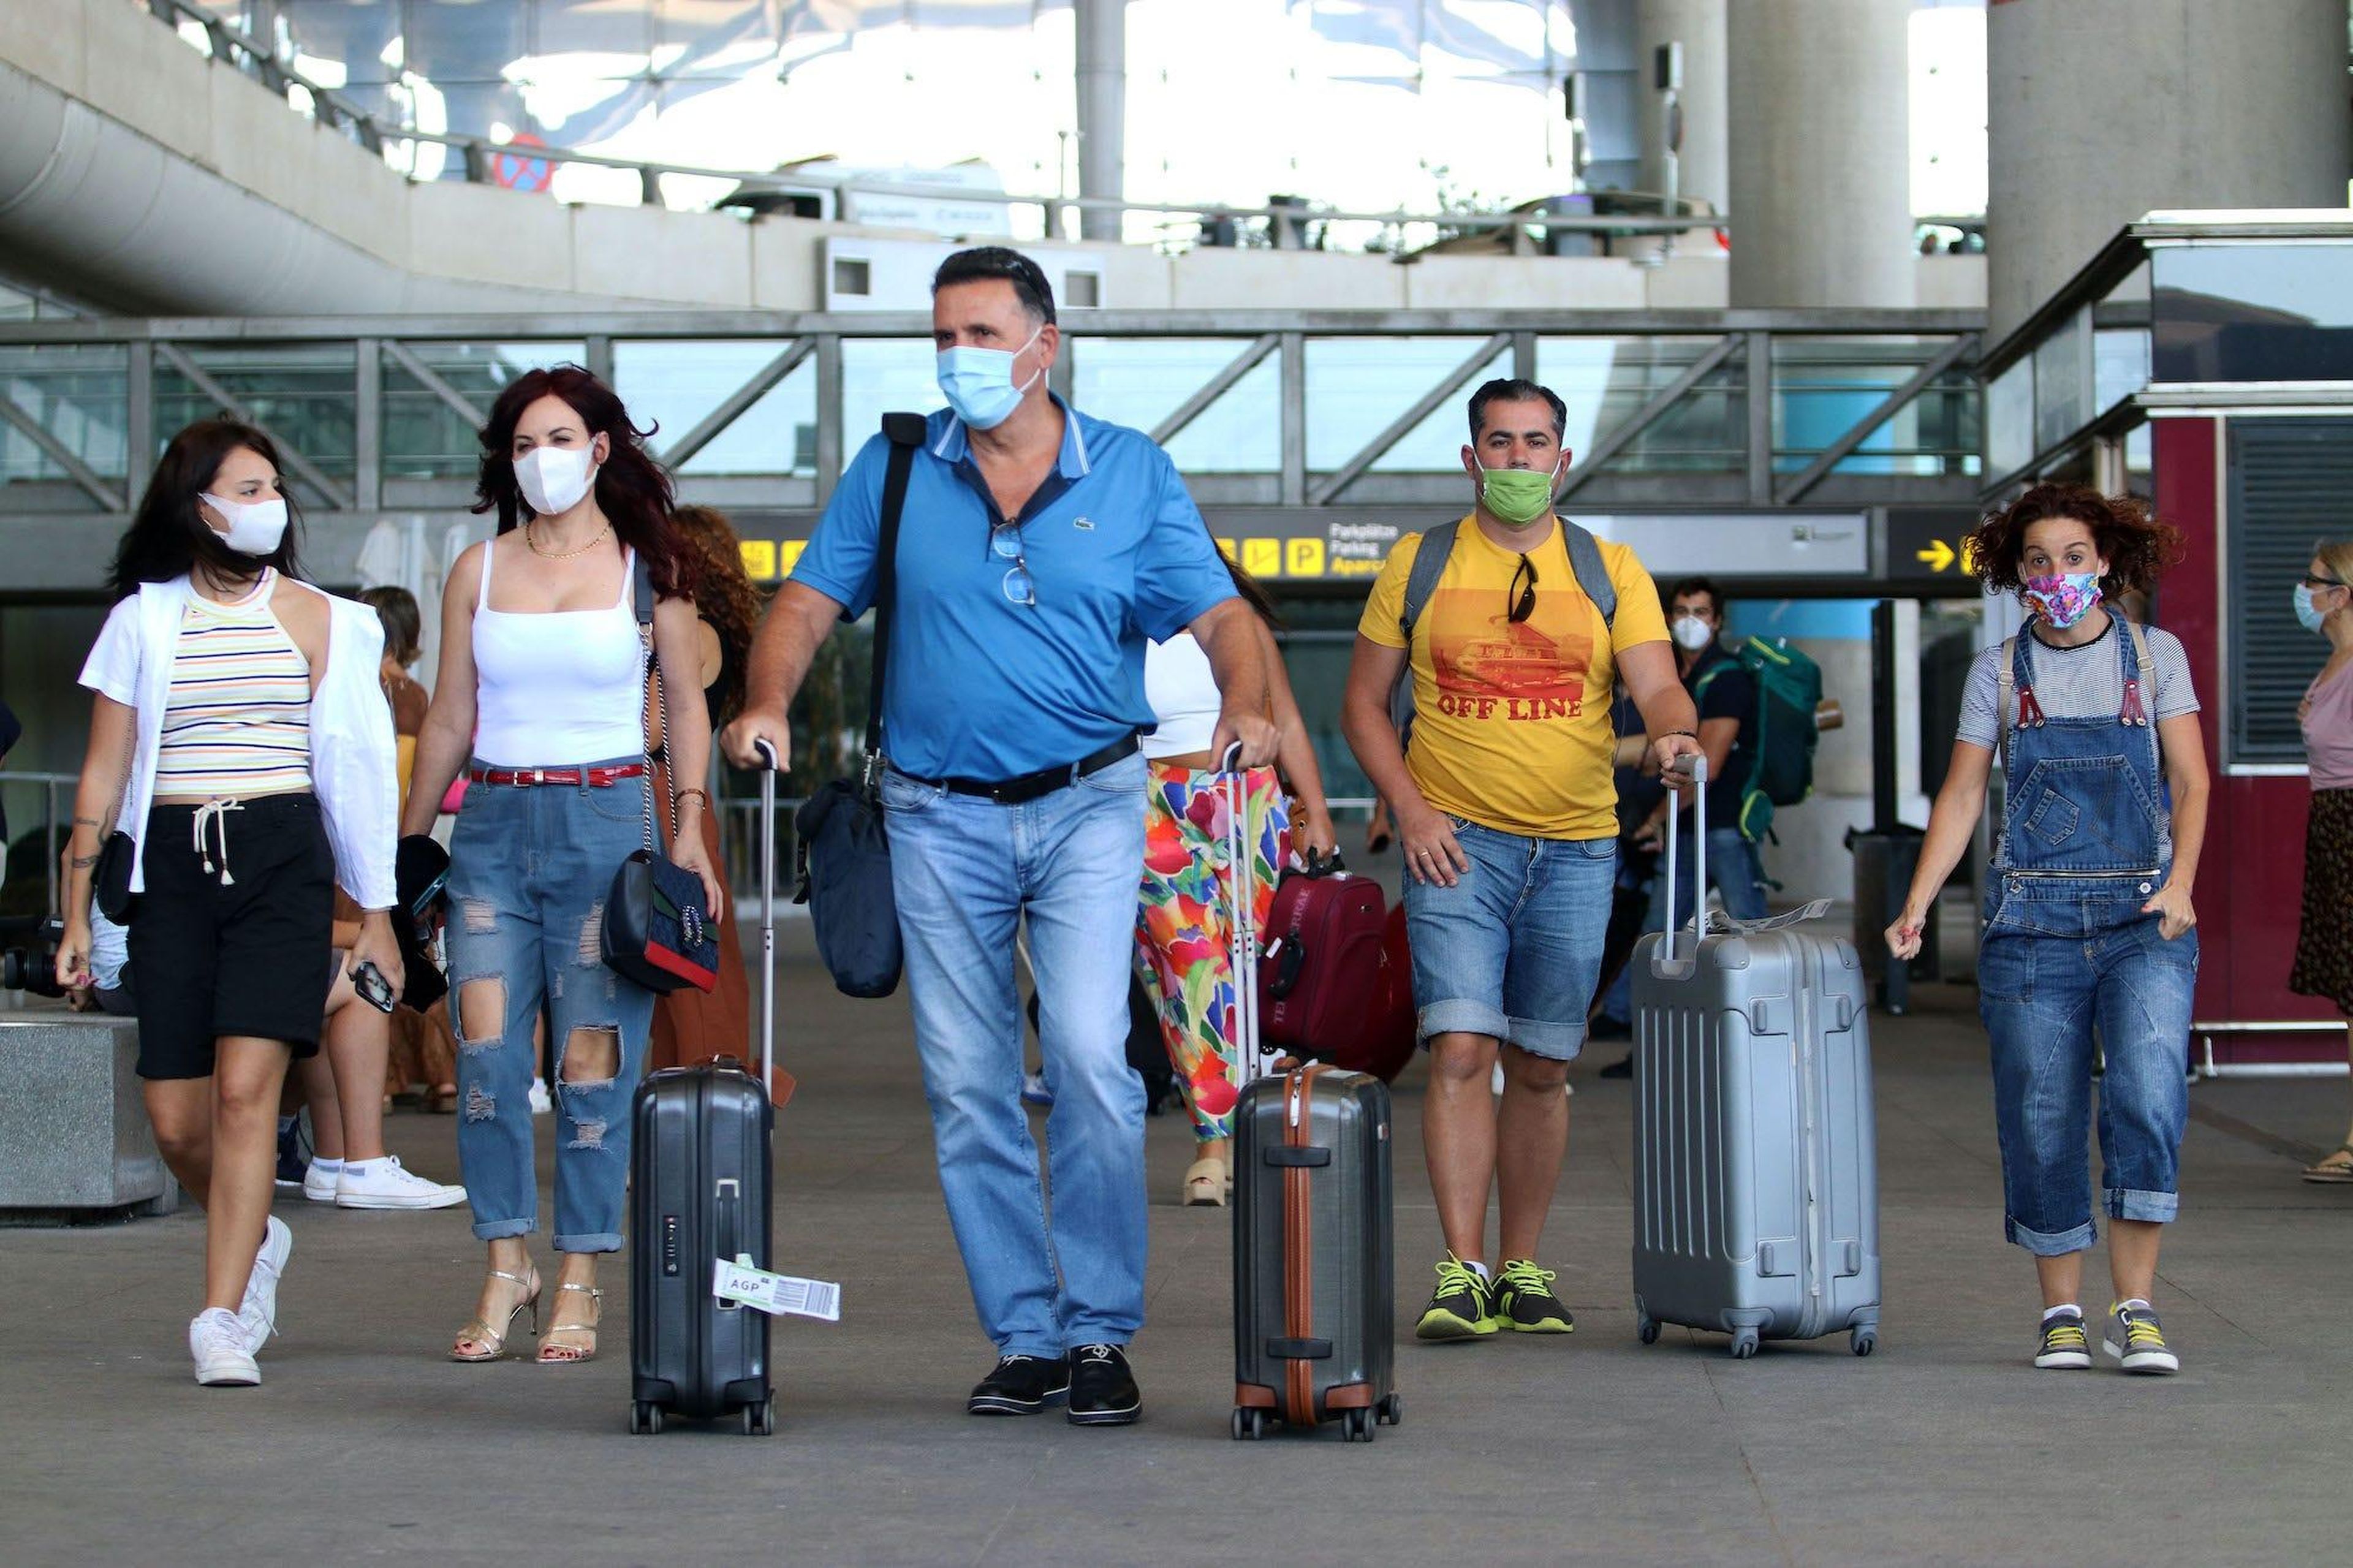 Llegada de turistas y residentes al aeropuerto Pablo Ruiz Picasso de Málaga, después de que el gobierno abriera las fronteras el primer día sin la alarma del virus COVID-19 el 22 de junio de 2020 en Málaga, España.